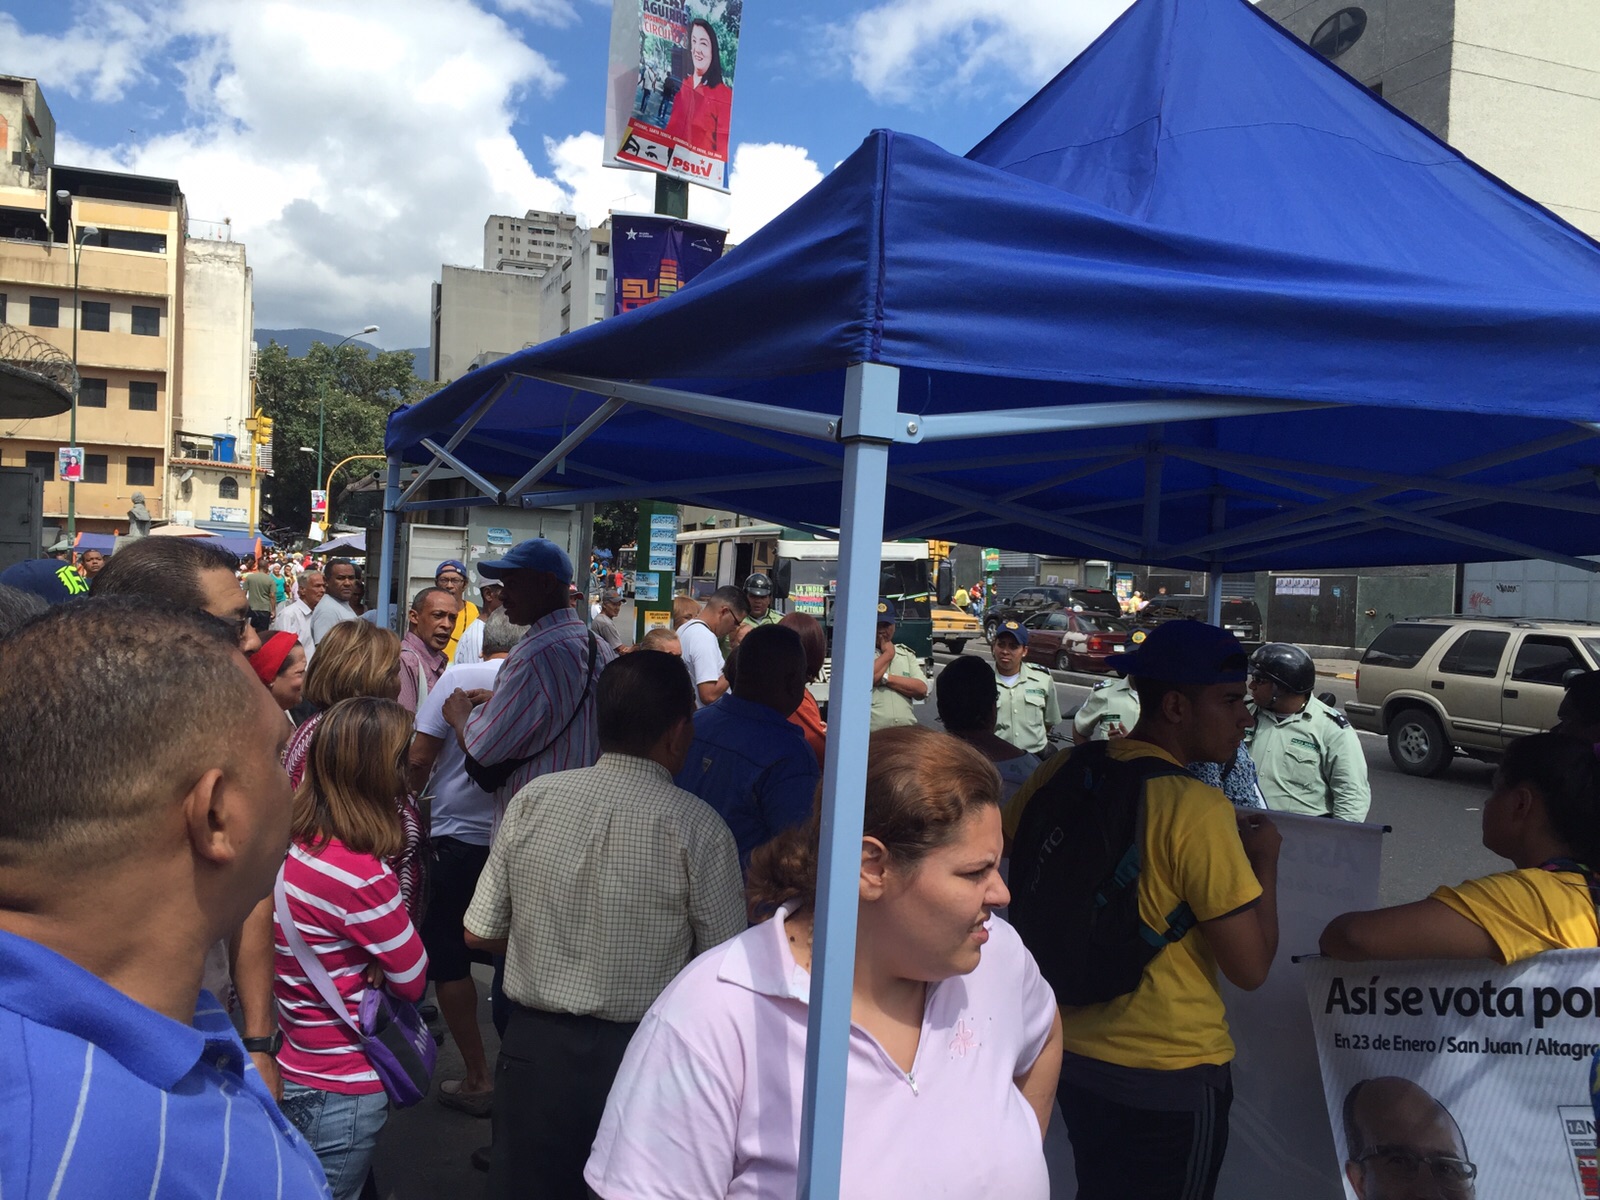 Al mediodía de este viernes, un grupo de 15 efectivos de la Policía de Caracas levantó de manera arbitraria un toldo de información de la Mesa de la Unidad Democrática (MUD) que se encontraba frente al mercado de Quinta Crespo con militantes de distintos partidos de la coalición opositora.